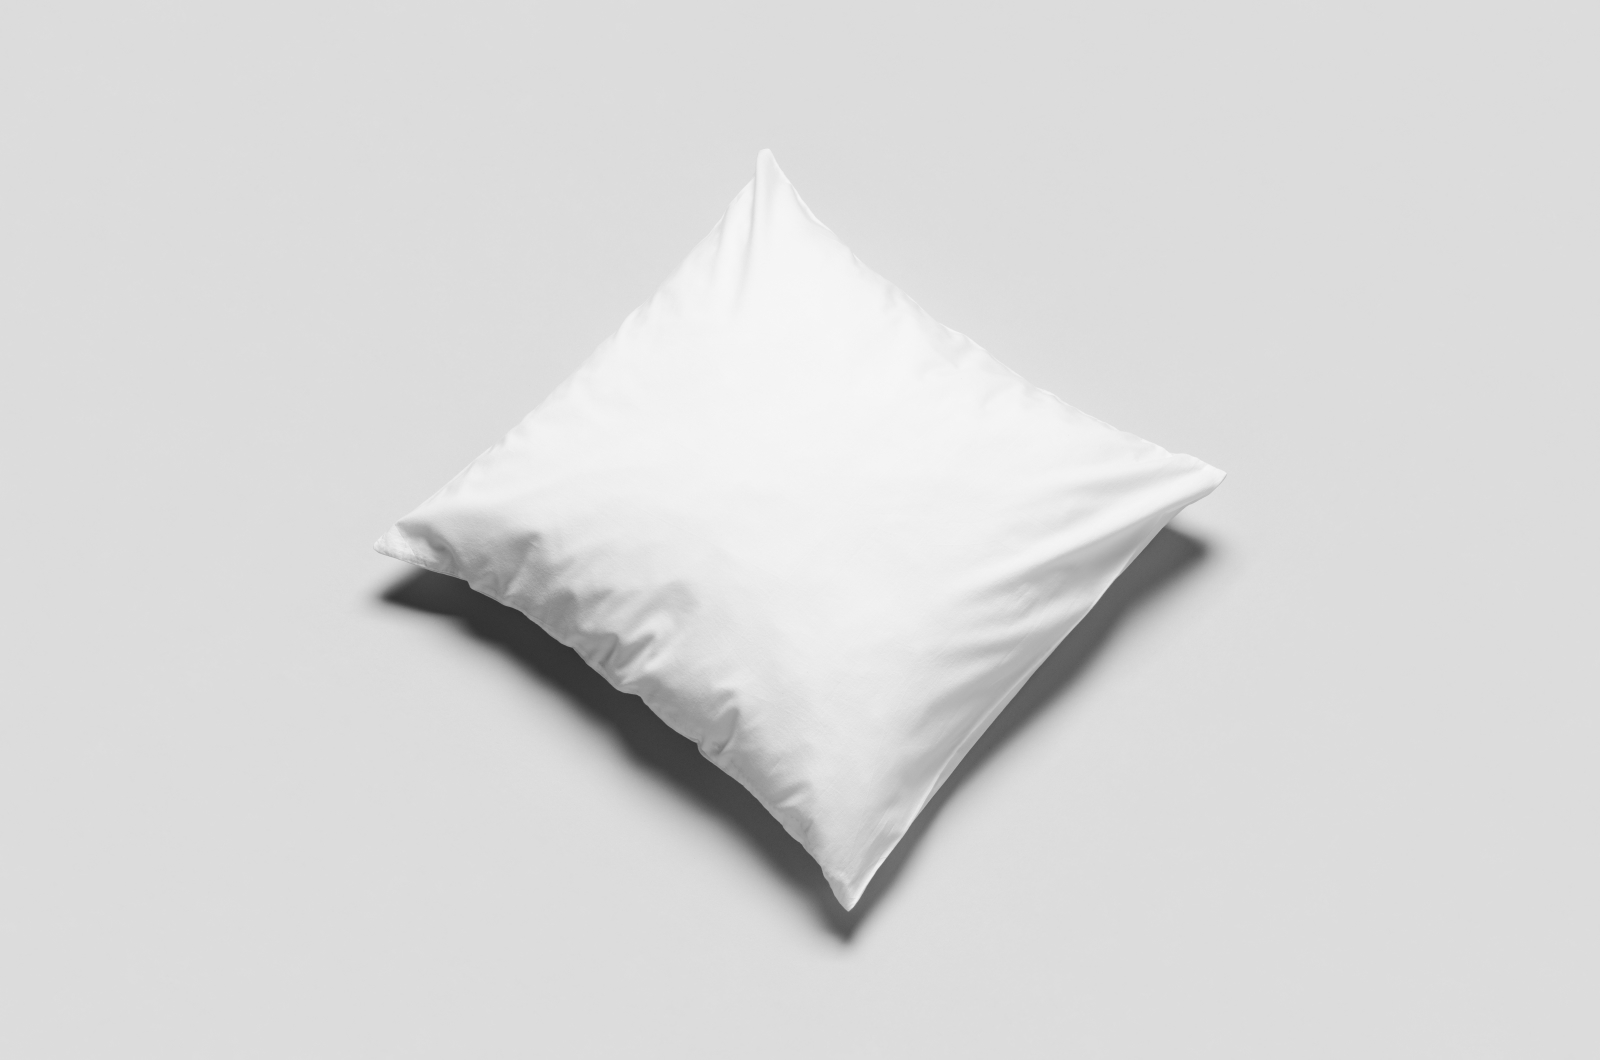 Komplettkissen Baumwolle Linon-Weiß / 30x30 cm